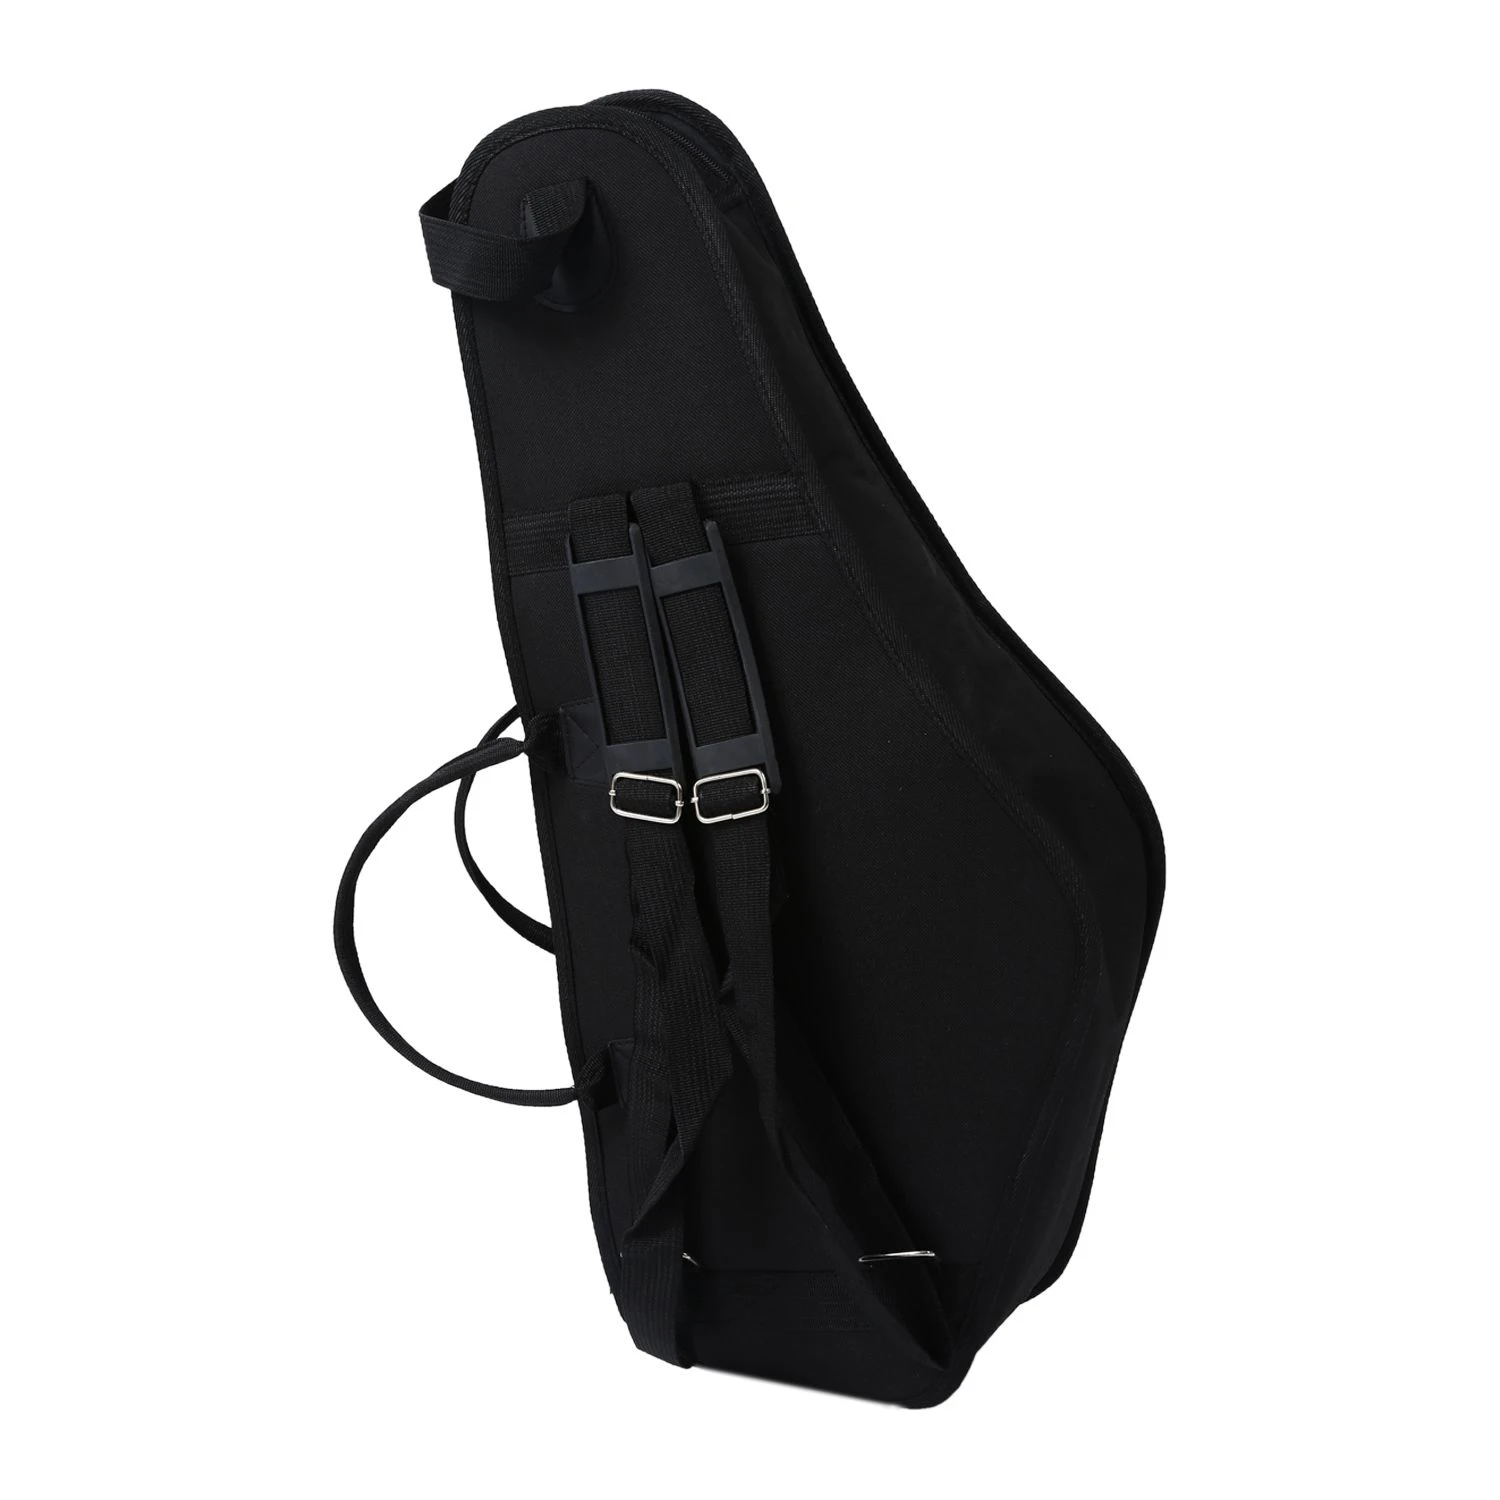 DUOER 600D водонепроницаемый чехол для саксофона стеганая двойная молния с регулируемым карманом на плече